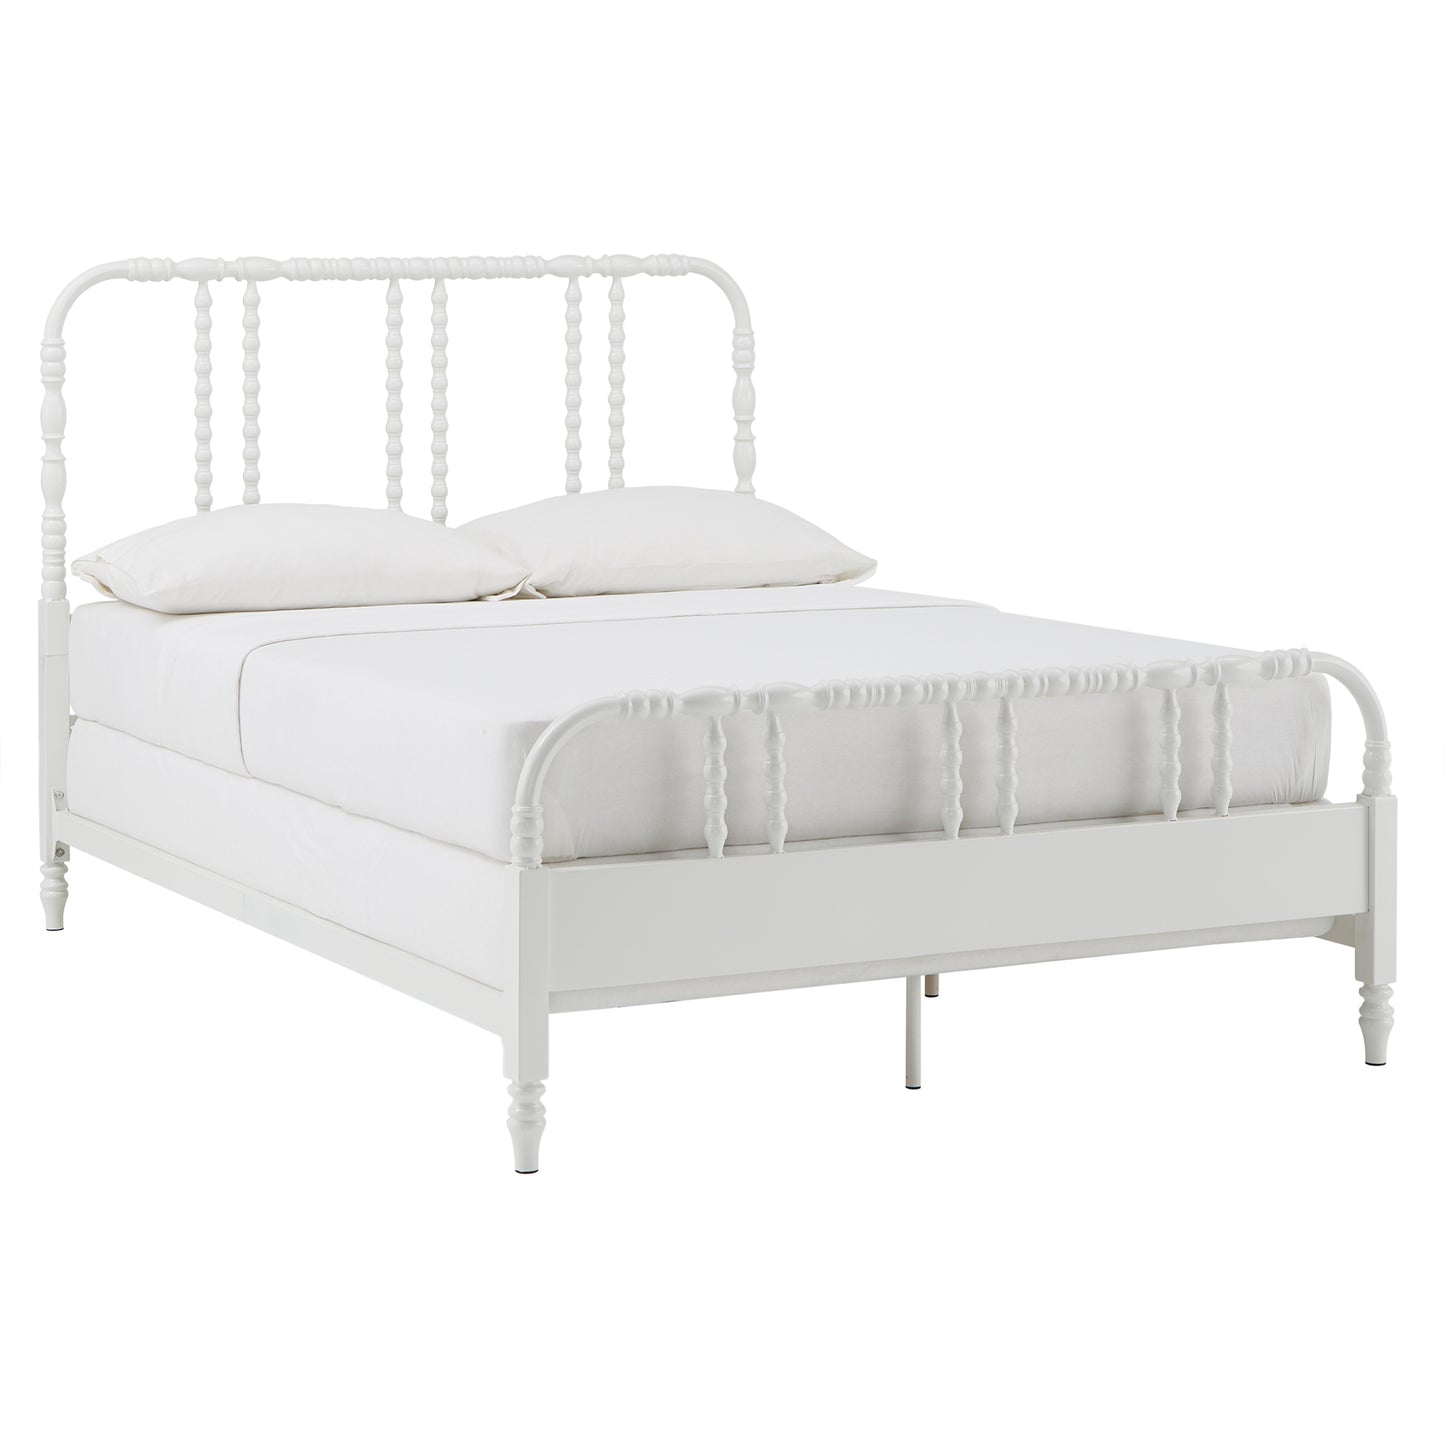 Metal Spool Bed - White, Queen (Queen Size)